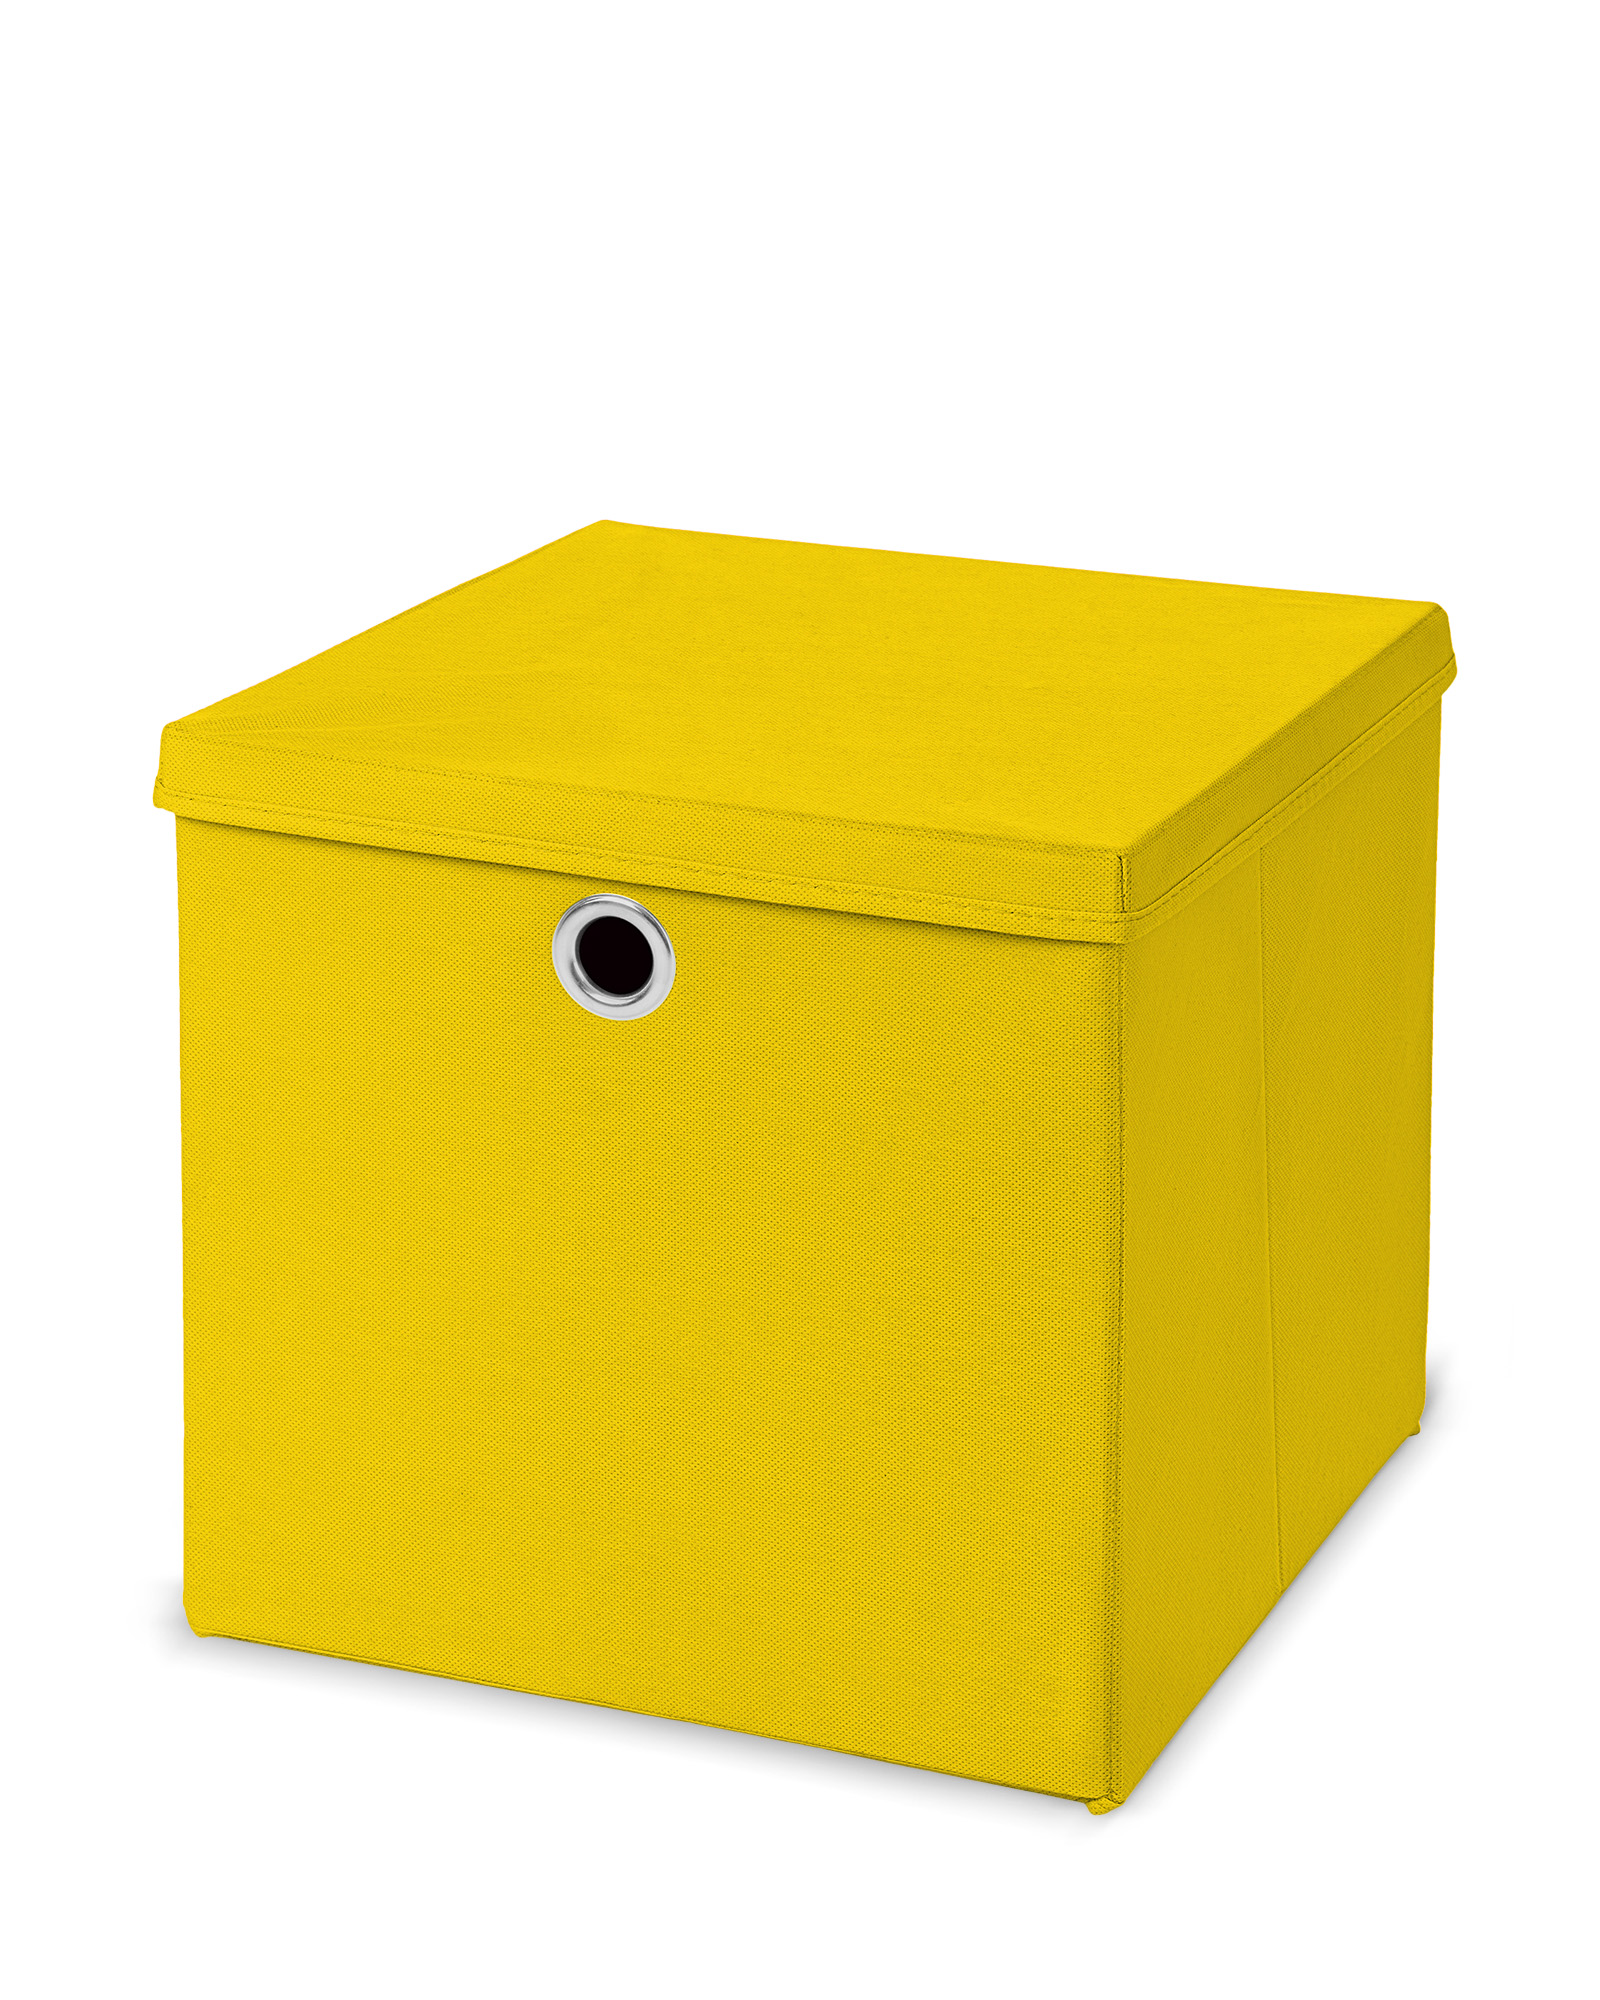 Faltbox 28x28x28 cm mit Deckel in vielen Farben - mit Metallöse - Circul